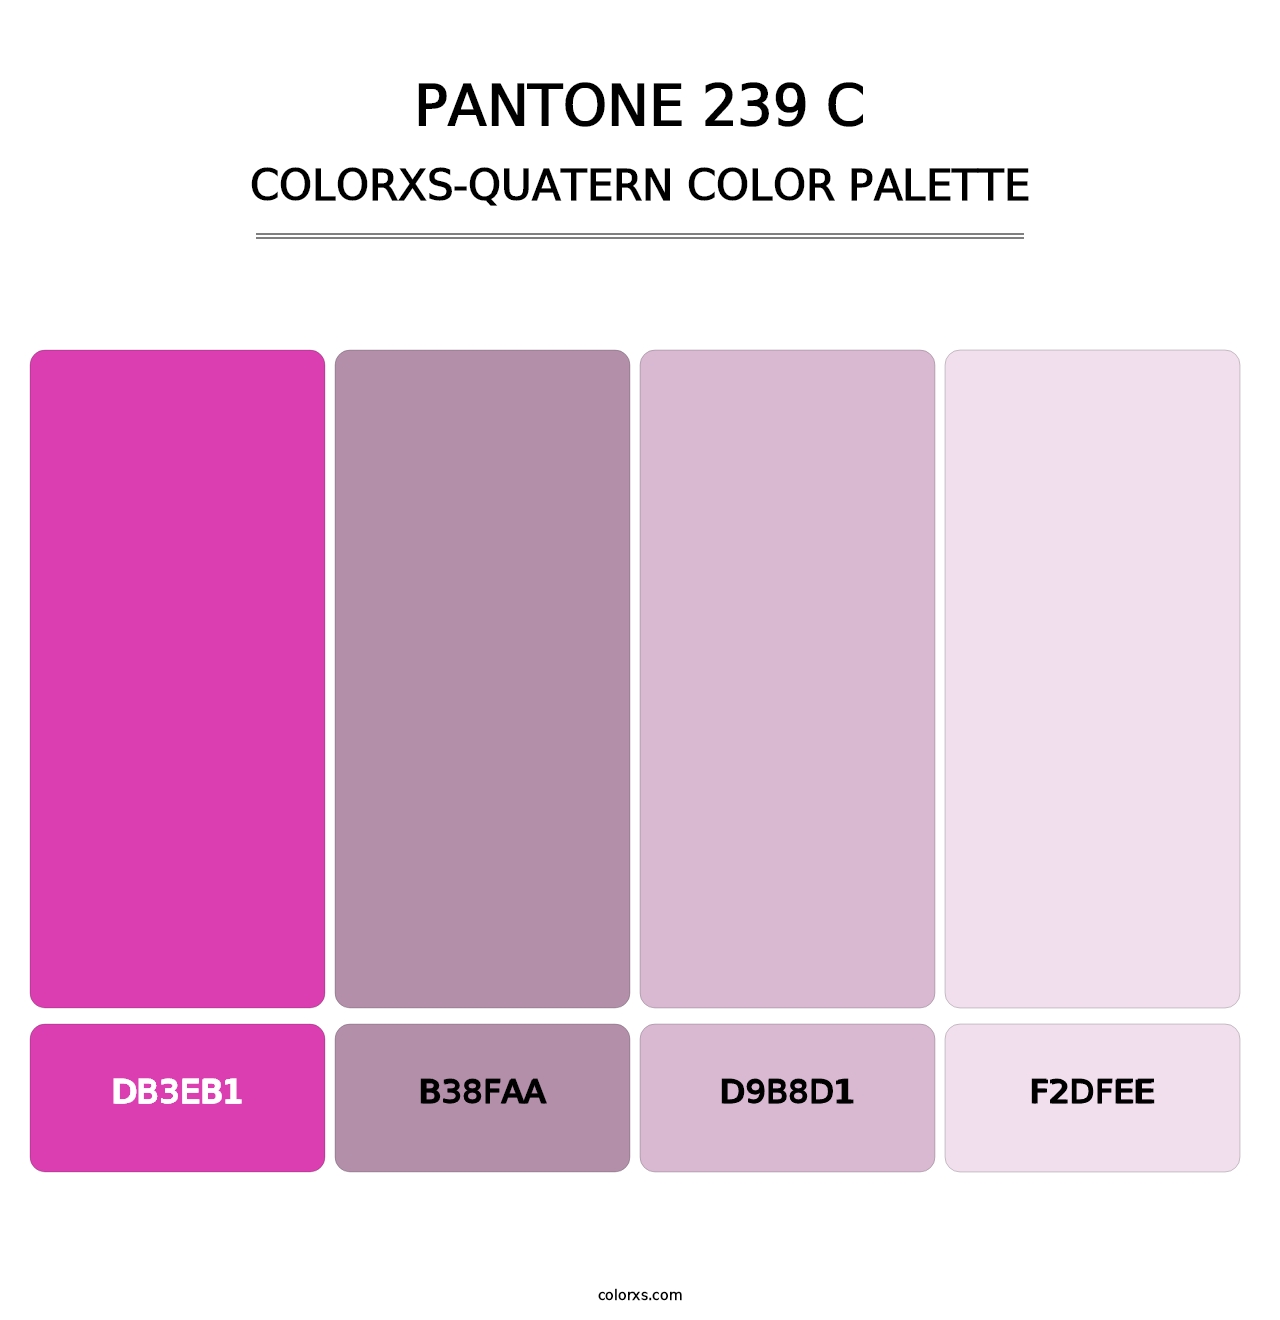 PANTONE 239 C - Colorxs Quatern Palette